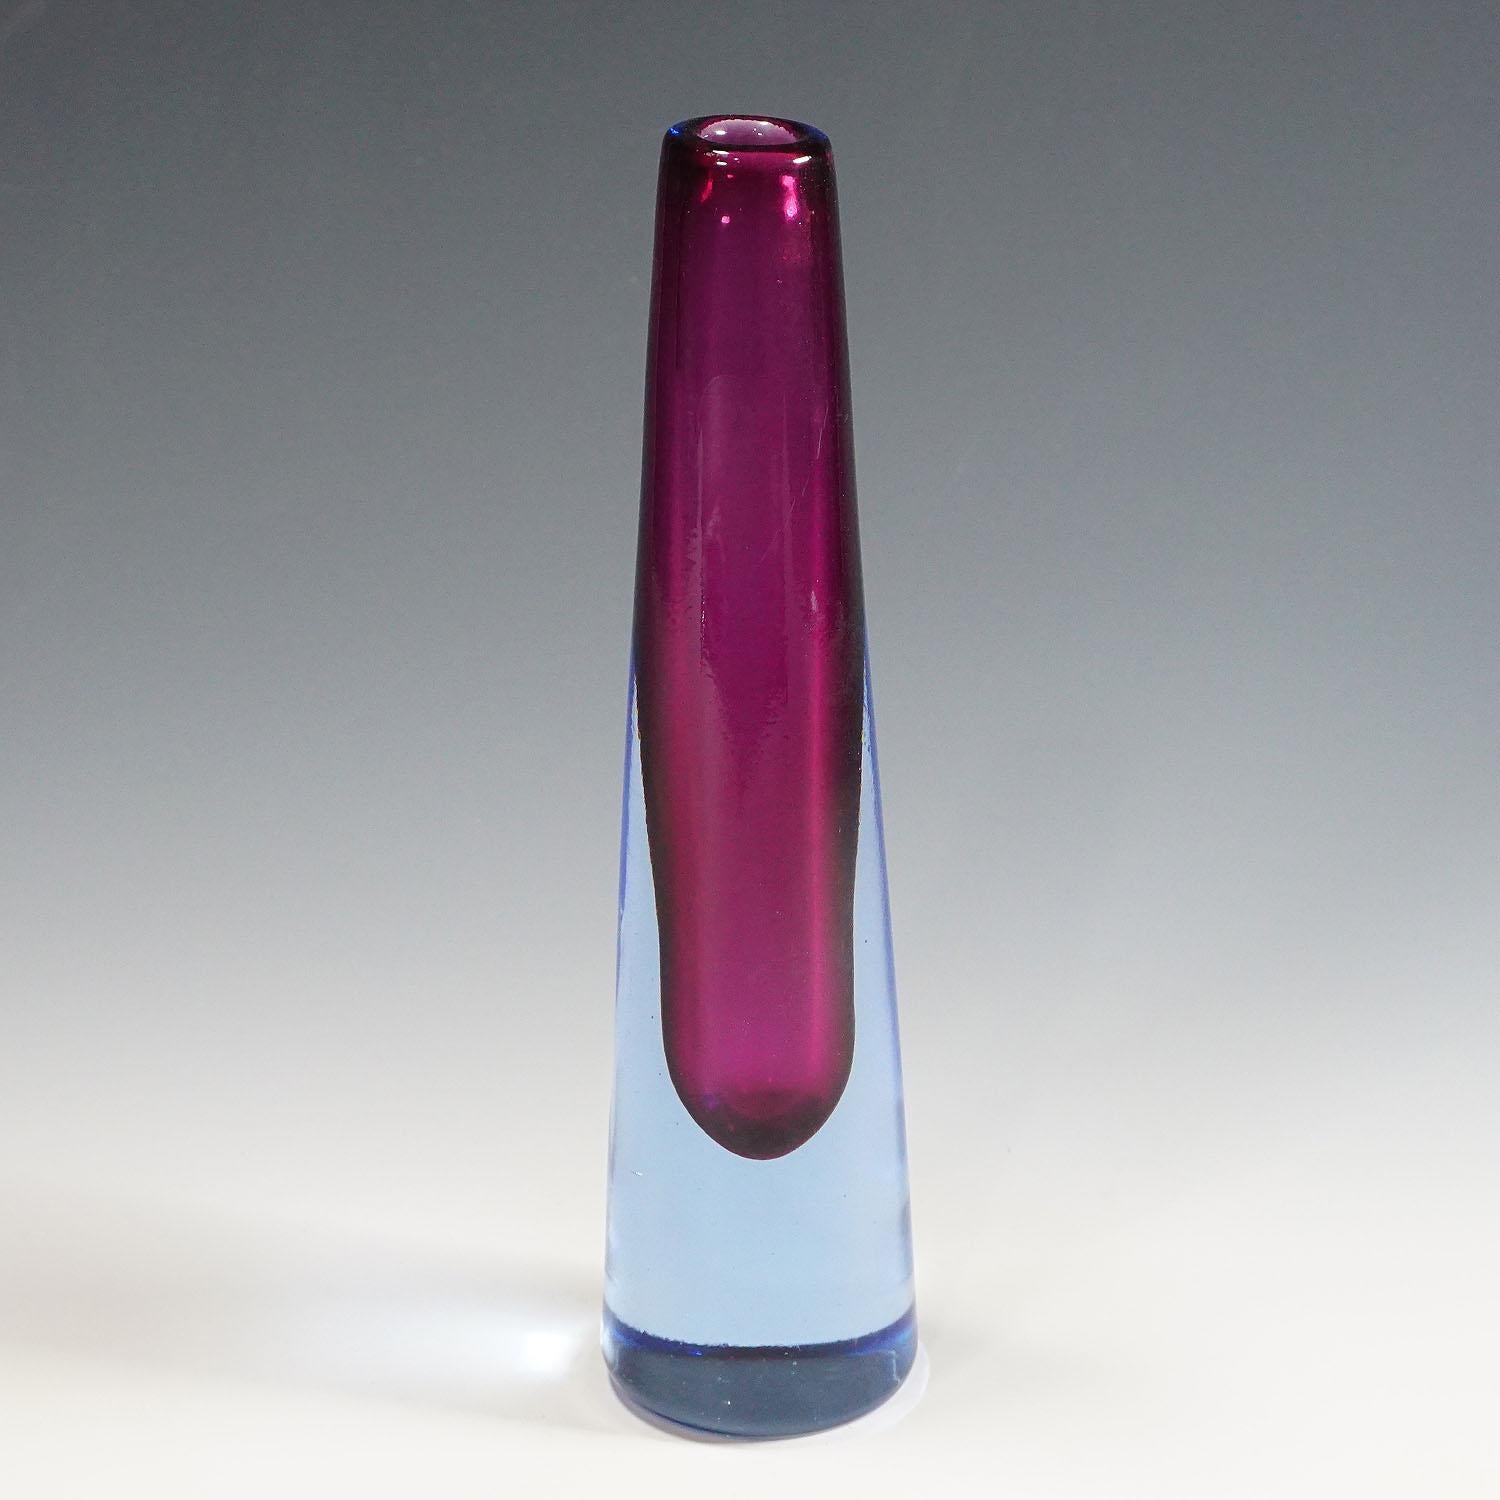 Eine Vase aus blauem und violettem Sommerso-Glas im Vintage-Stil. Hergestellt von Salviati & Co. in Venedig. Wahrscheinlich von Lugiano Gaspari entworfen. Firmenetikett auf dem Sockel 'salviati venezia'. Hergestellt in Murano, um 1960.

Maße: Höhe